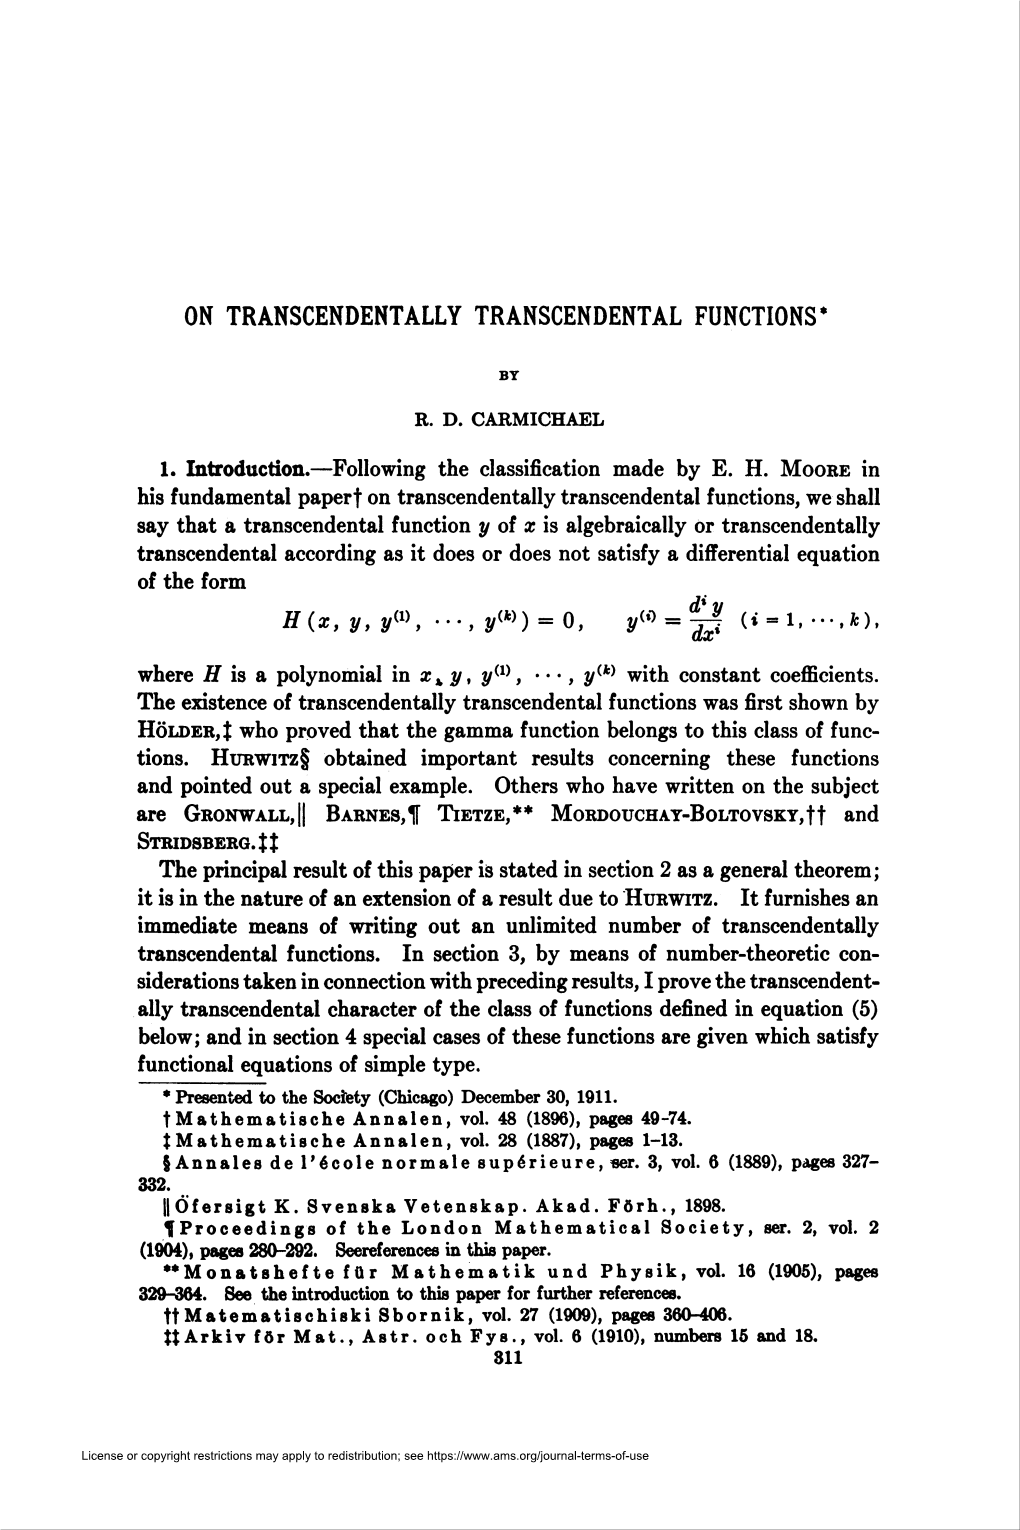 On Transcendentally Transcendental Functions*